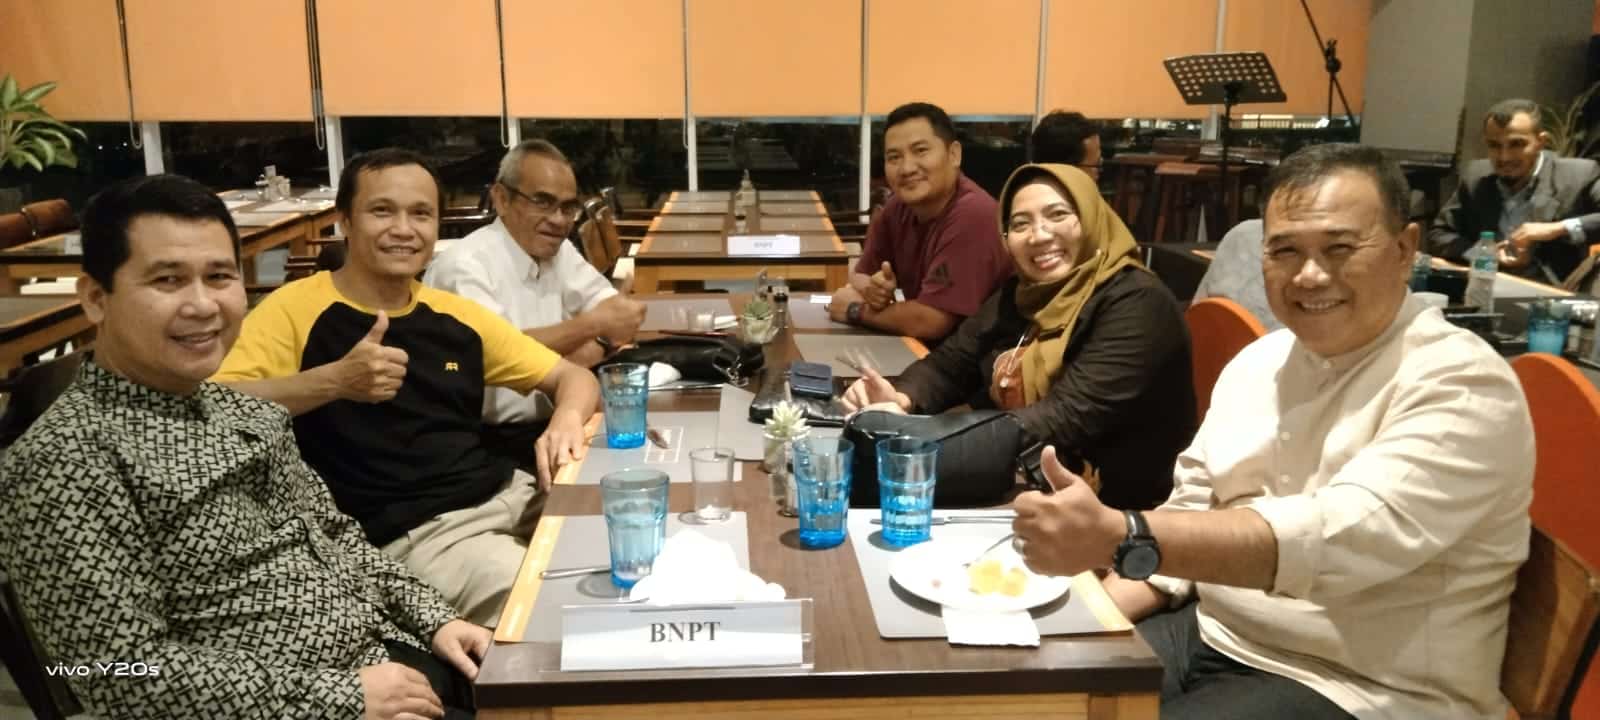 Ketua Bidang Penelitian FKPT Provinsi Kalbar, Yusriadi (baju hitam lis kuning) berfoto di sela-sela mengikuti kegiatan ToT yang diadakan oleh Badan Nasional Penanggulangan Terorisme (BNPT). (Foto: Istimewa)